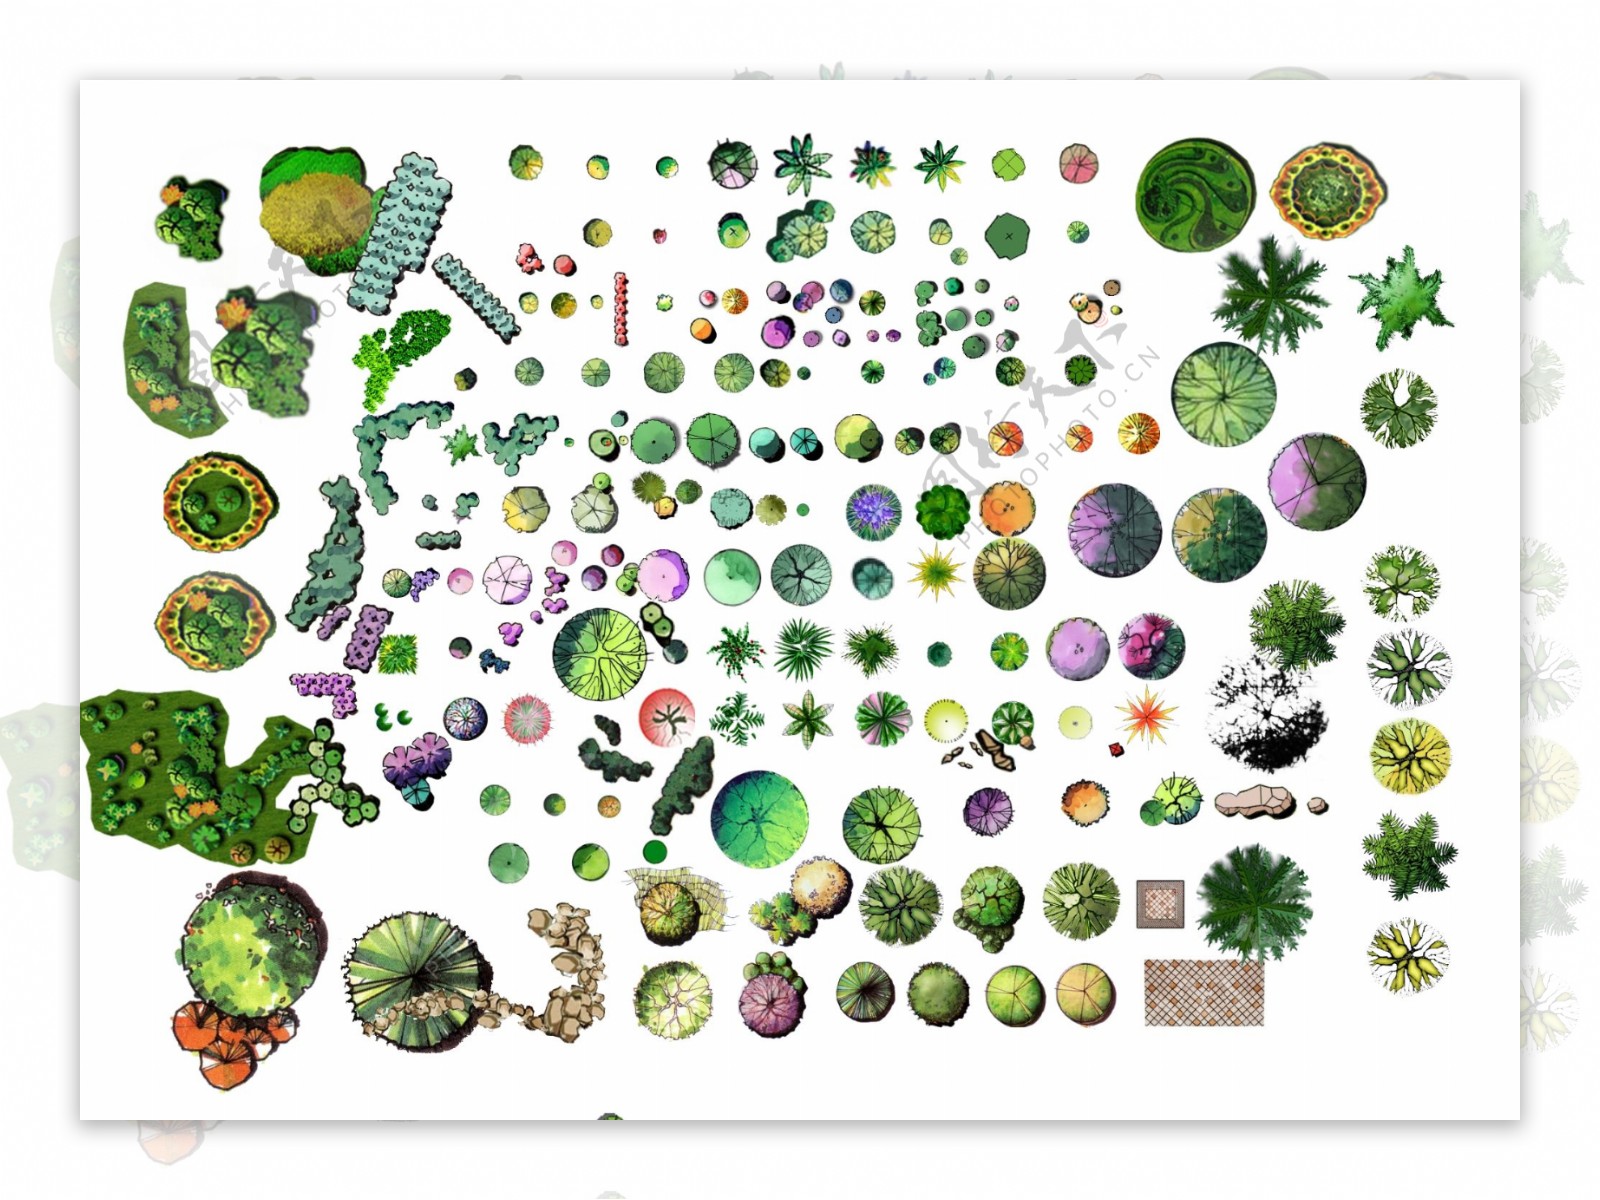 彩色平面植物素材图片